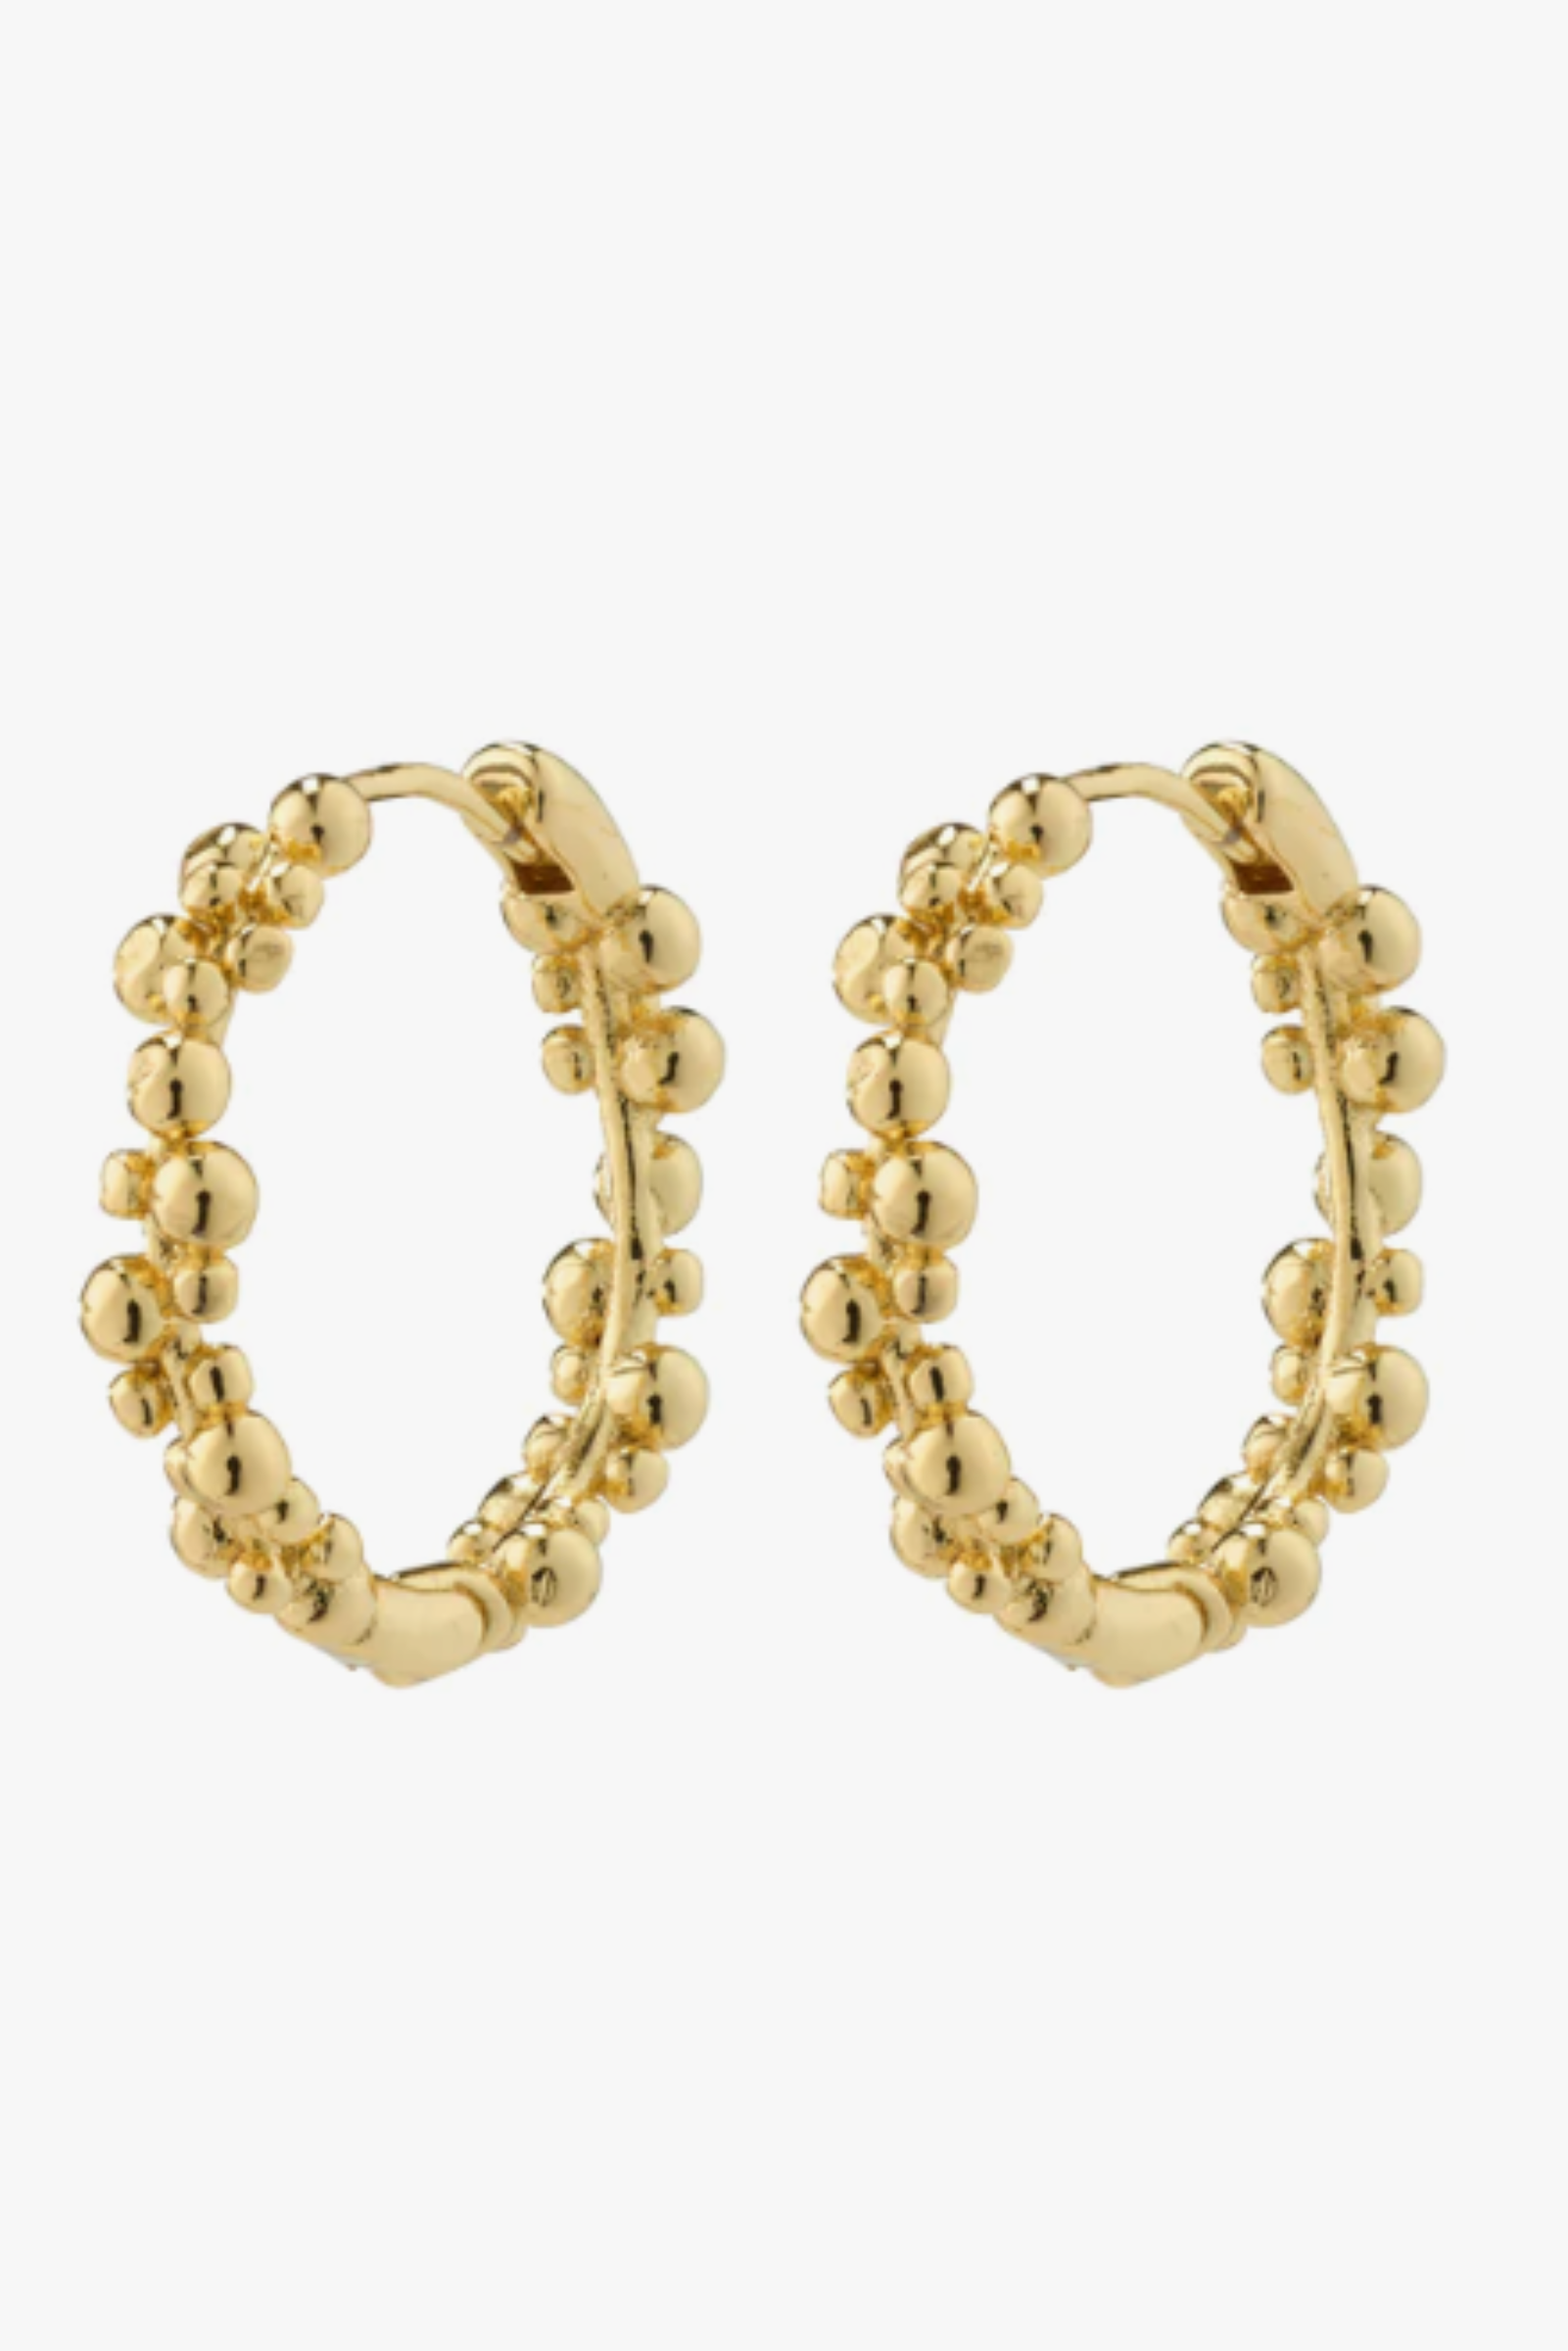 Solidarity Recycled Medium Hoop Earrings - Gold Plated